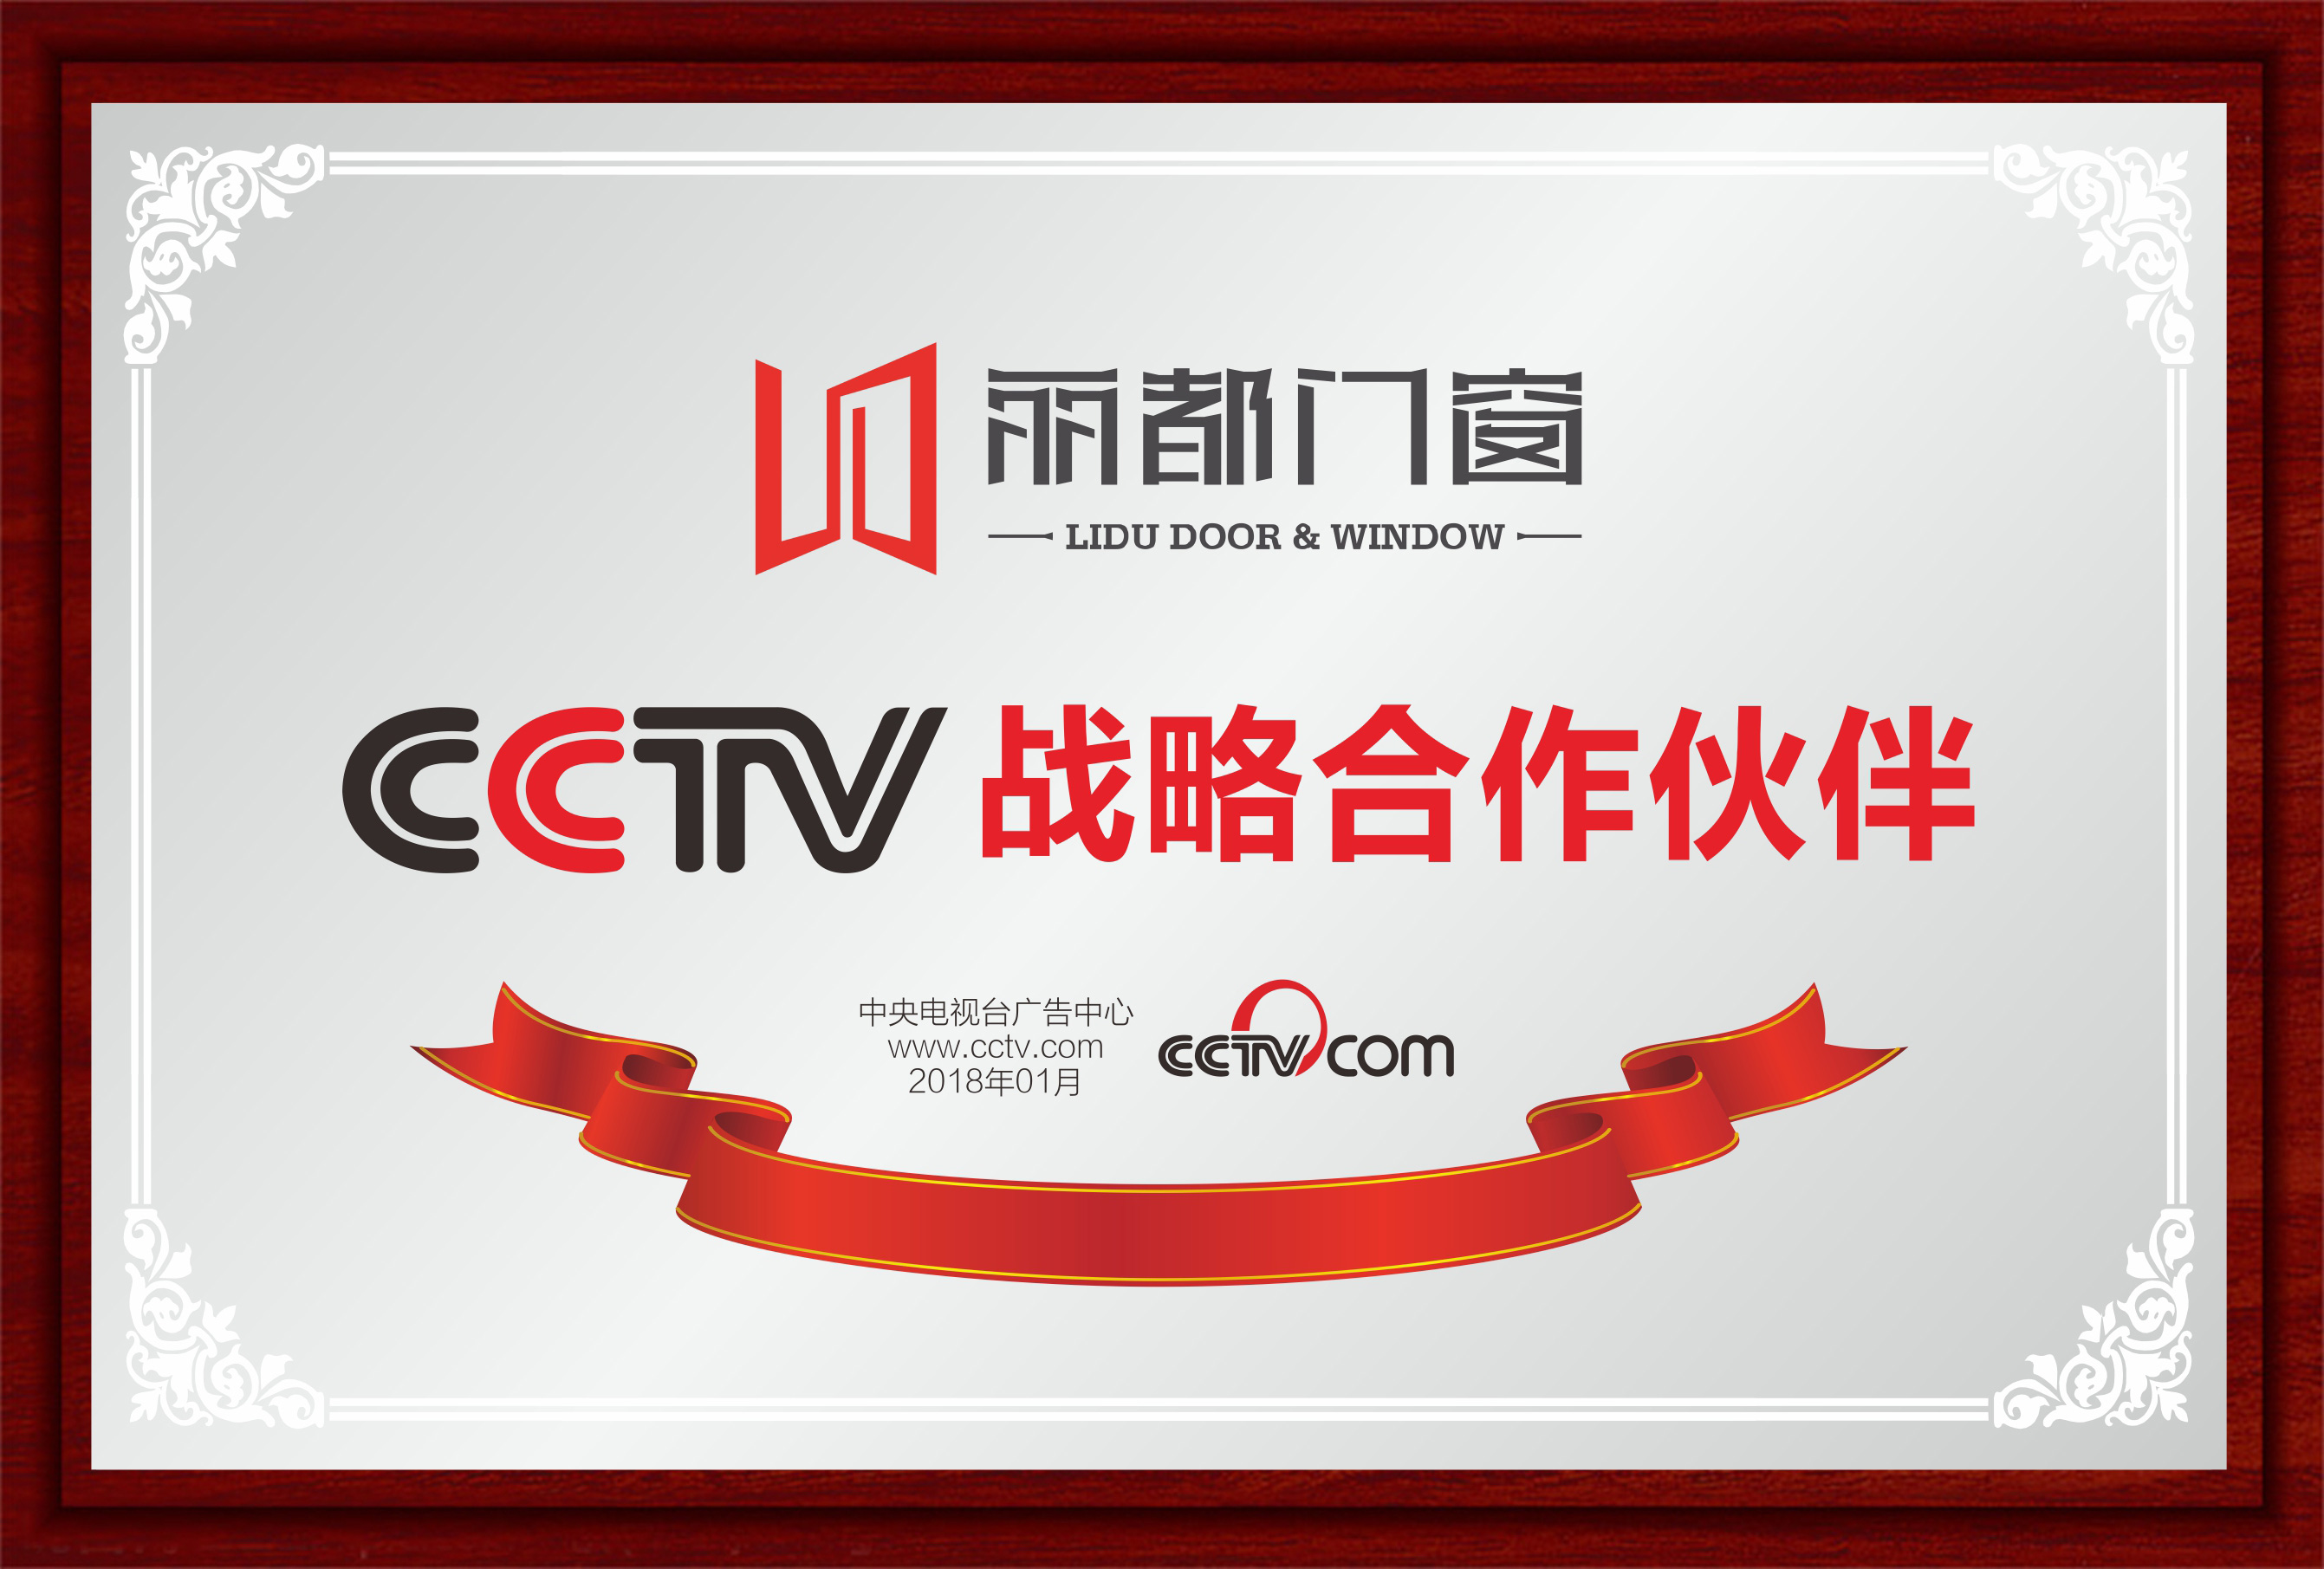 CCTV戰略合作伙伴